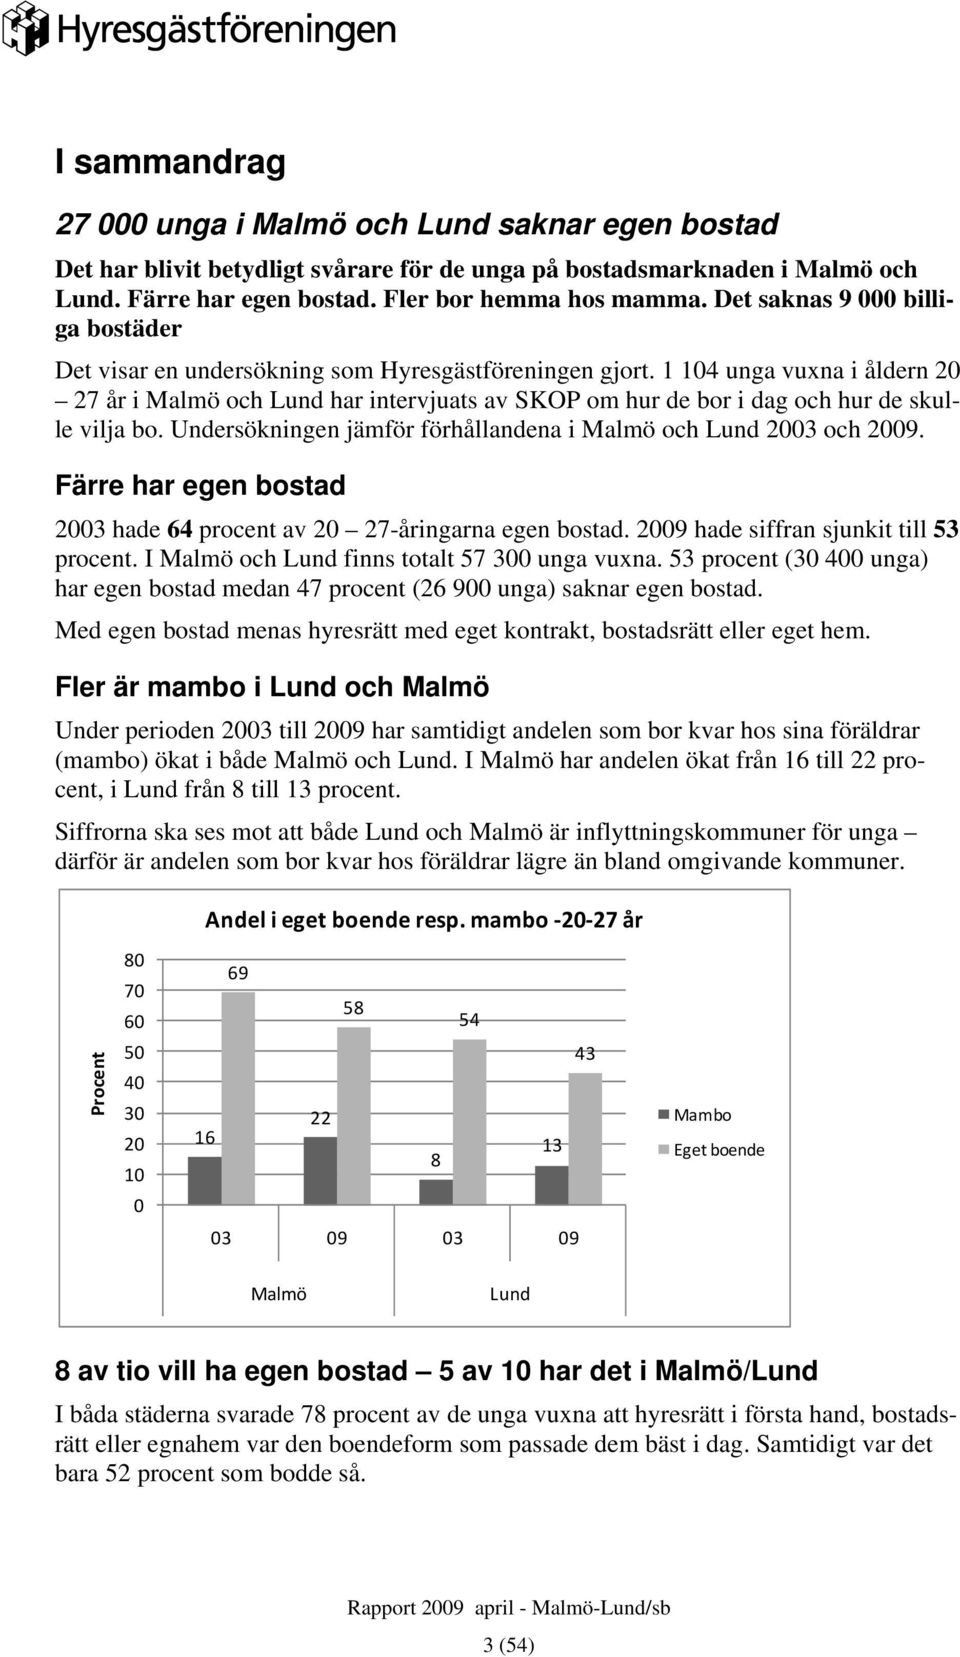 1 104 unga vuxna i åldern 20 27 år i Malmö och Lund har intervjuats av SKOP om hur de bor i dag och hur de skulle vilja bo. Undersökningen jämför förhållandena i Malmö och Lund 2003 och 2009.